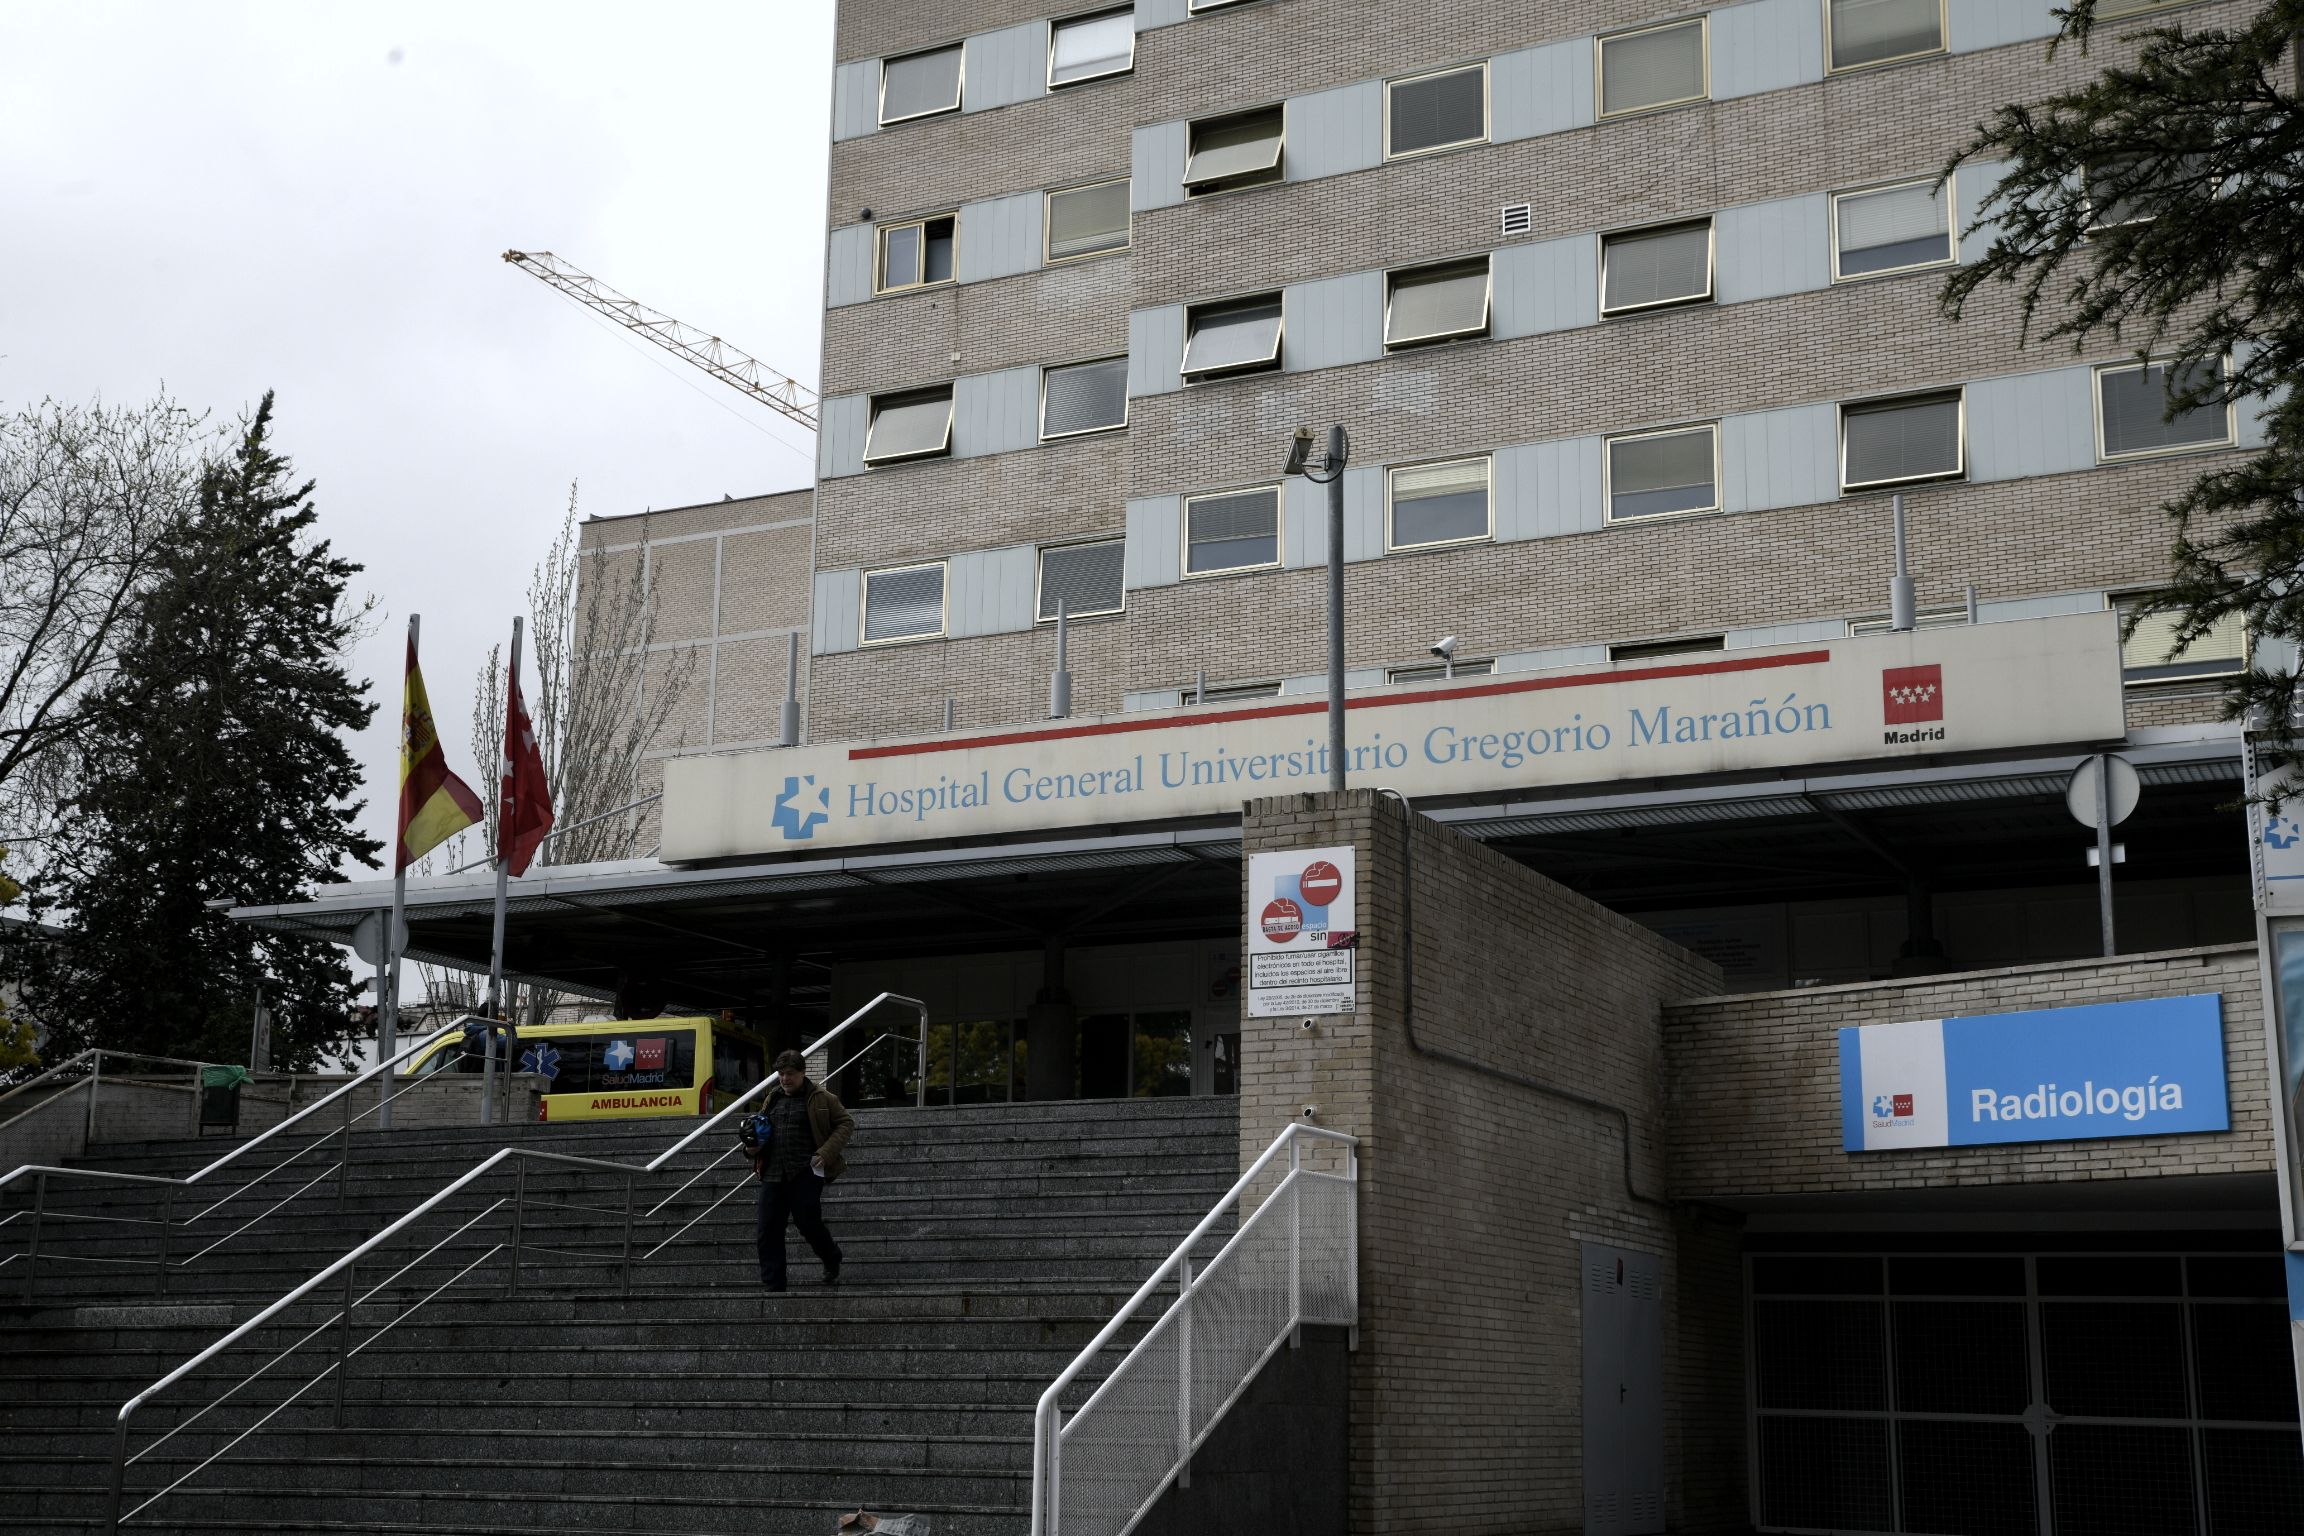 Estos son los hospitales públicos españoles con mejor reputación